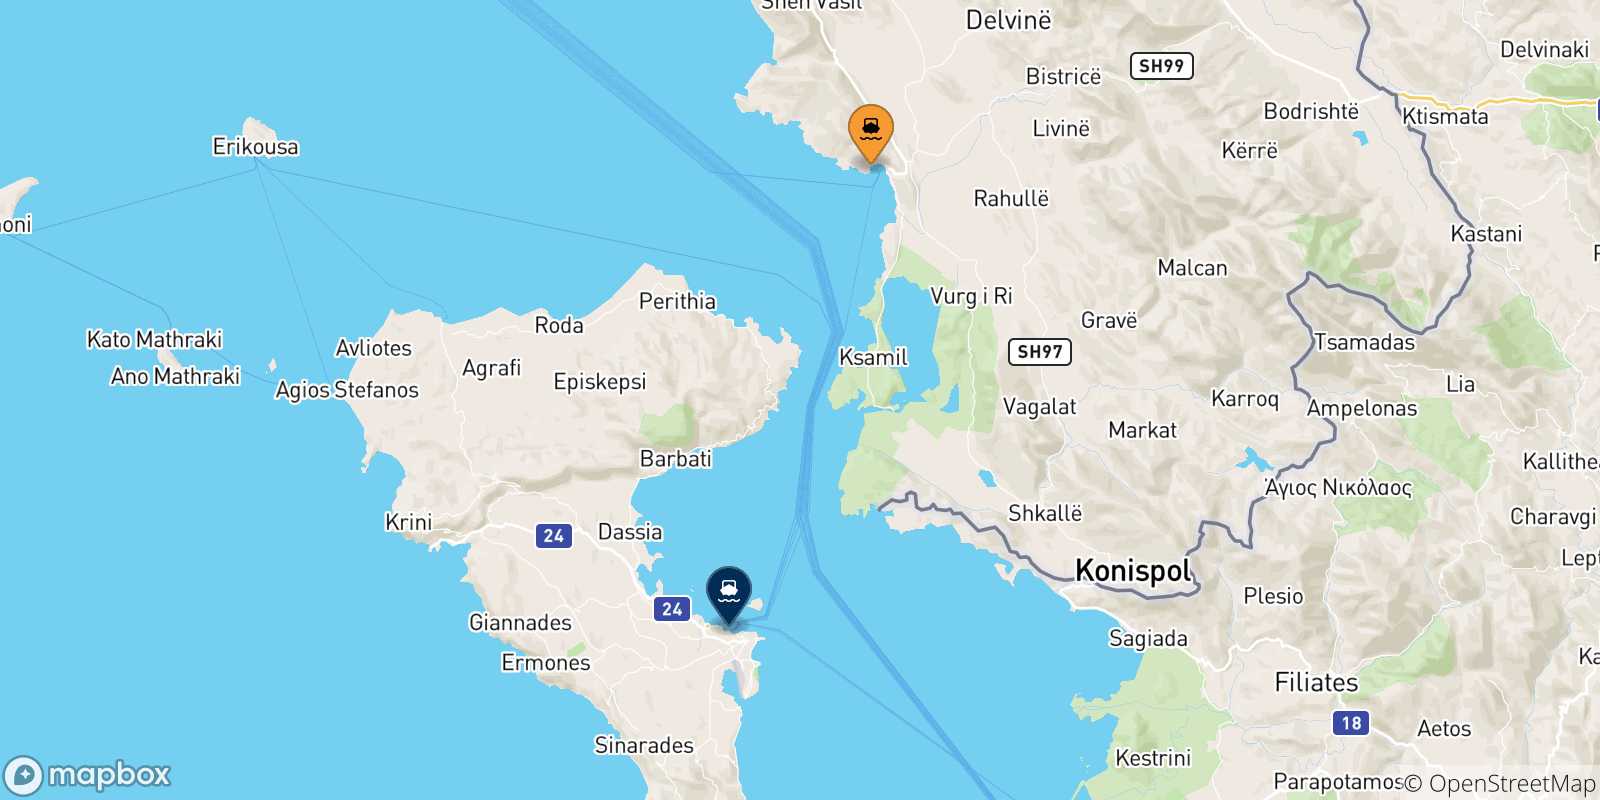 Mappa delle possibili rotte tra Saranda e le Isole Ionie